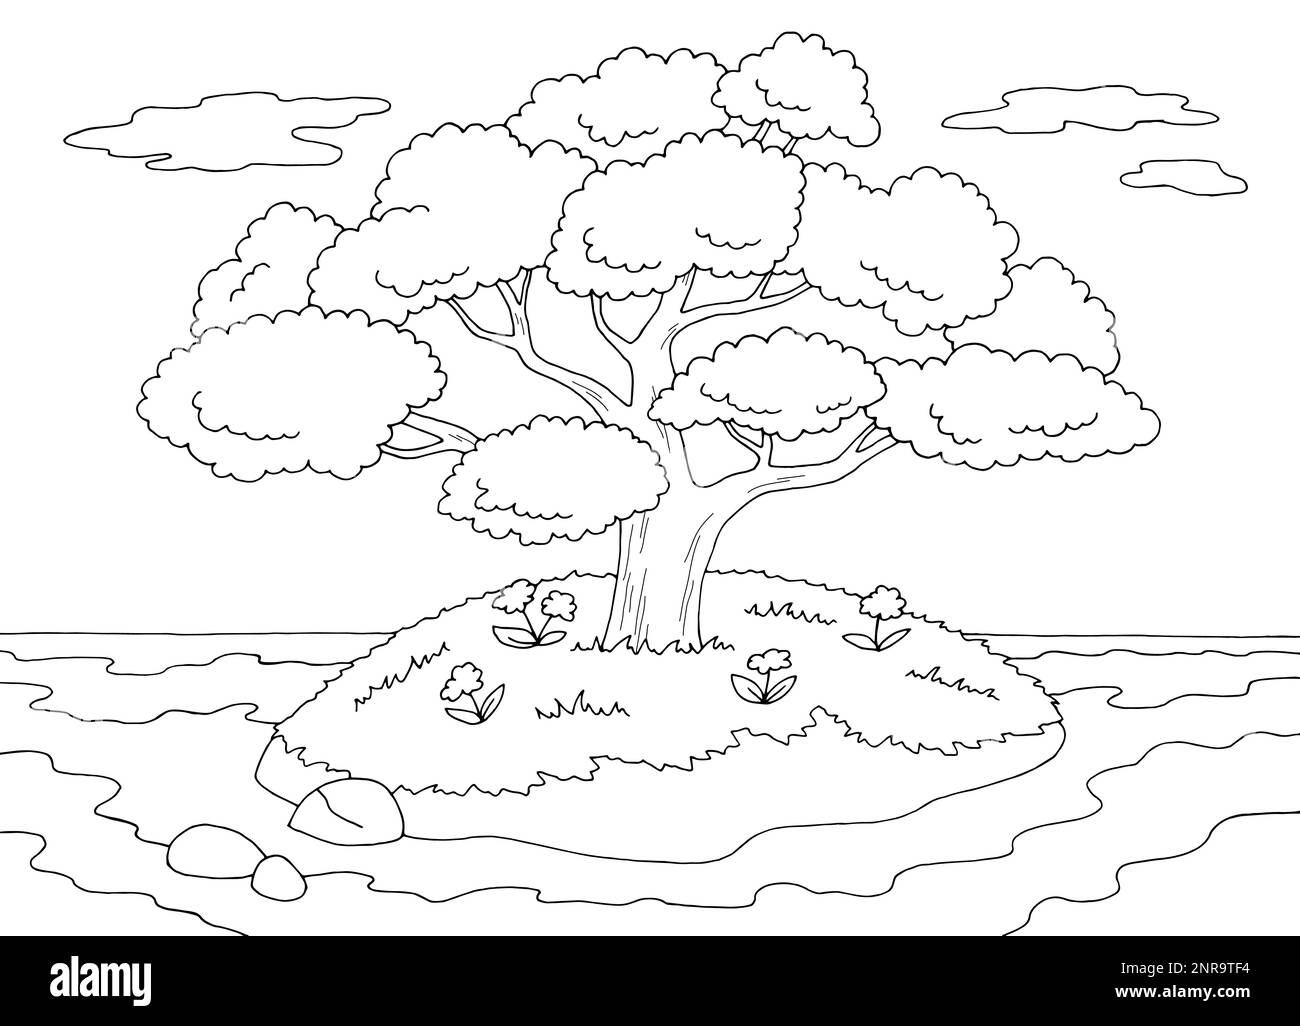 Darstellungsvektor für die Skizze der Inselbaumstruktur in schwarz-weiß Querformat Stock Vektor